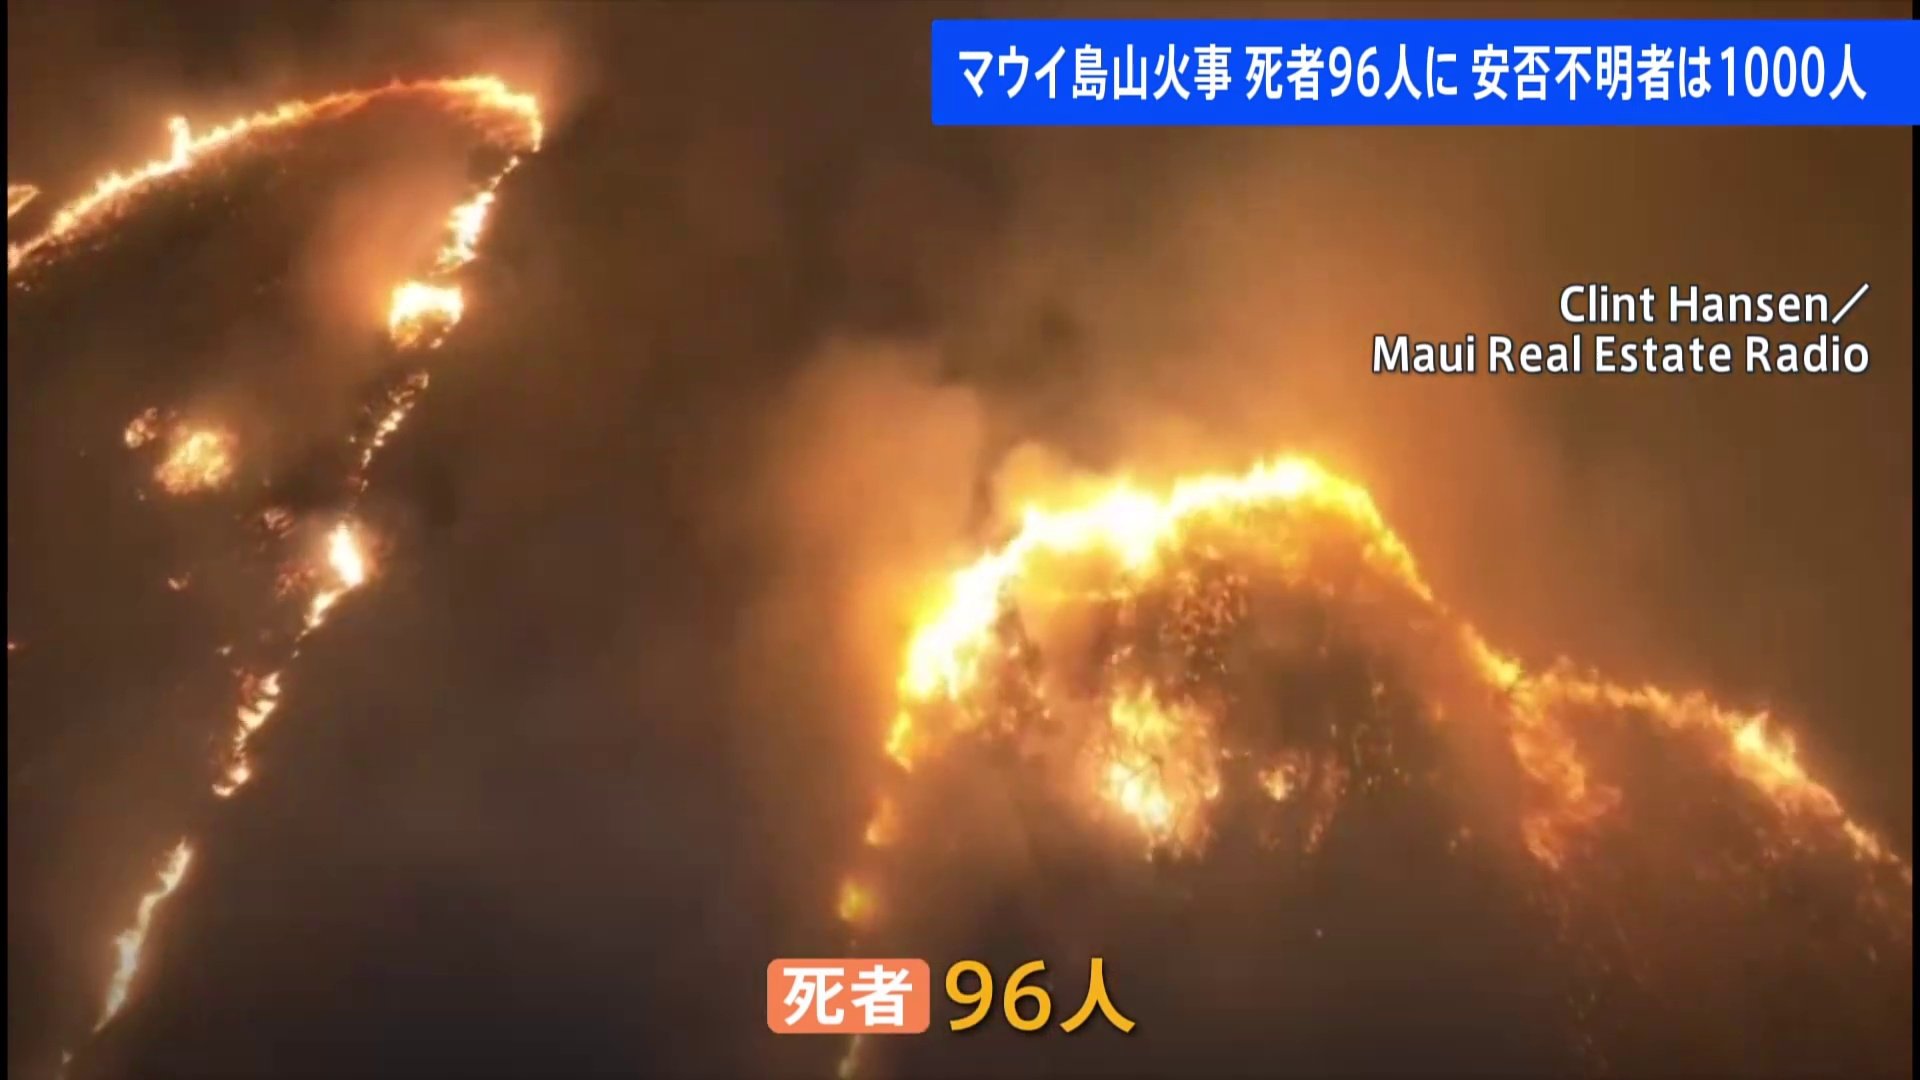 ハワイ・マウイ島大規模火災 死者96人に 約1000人が安否不明